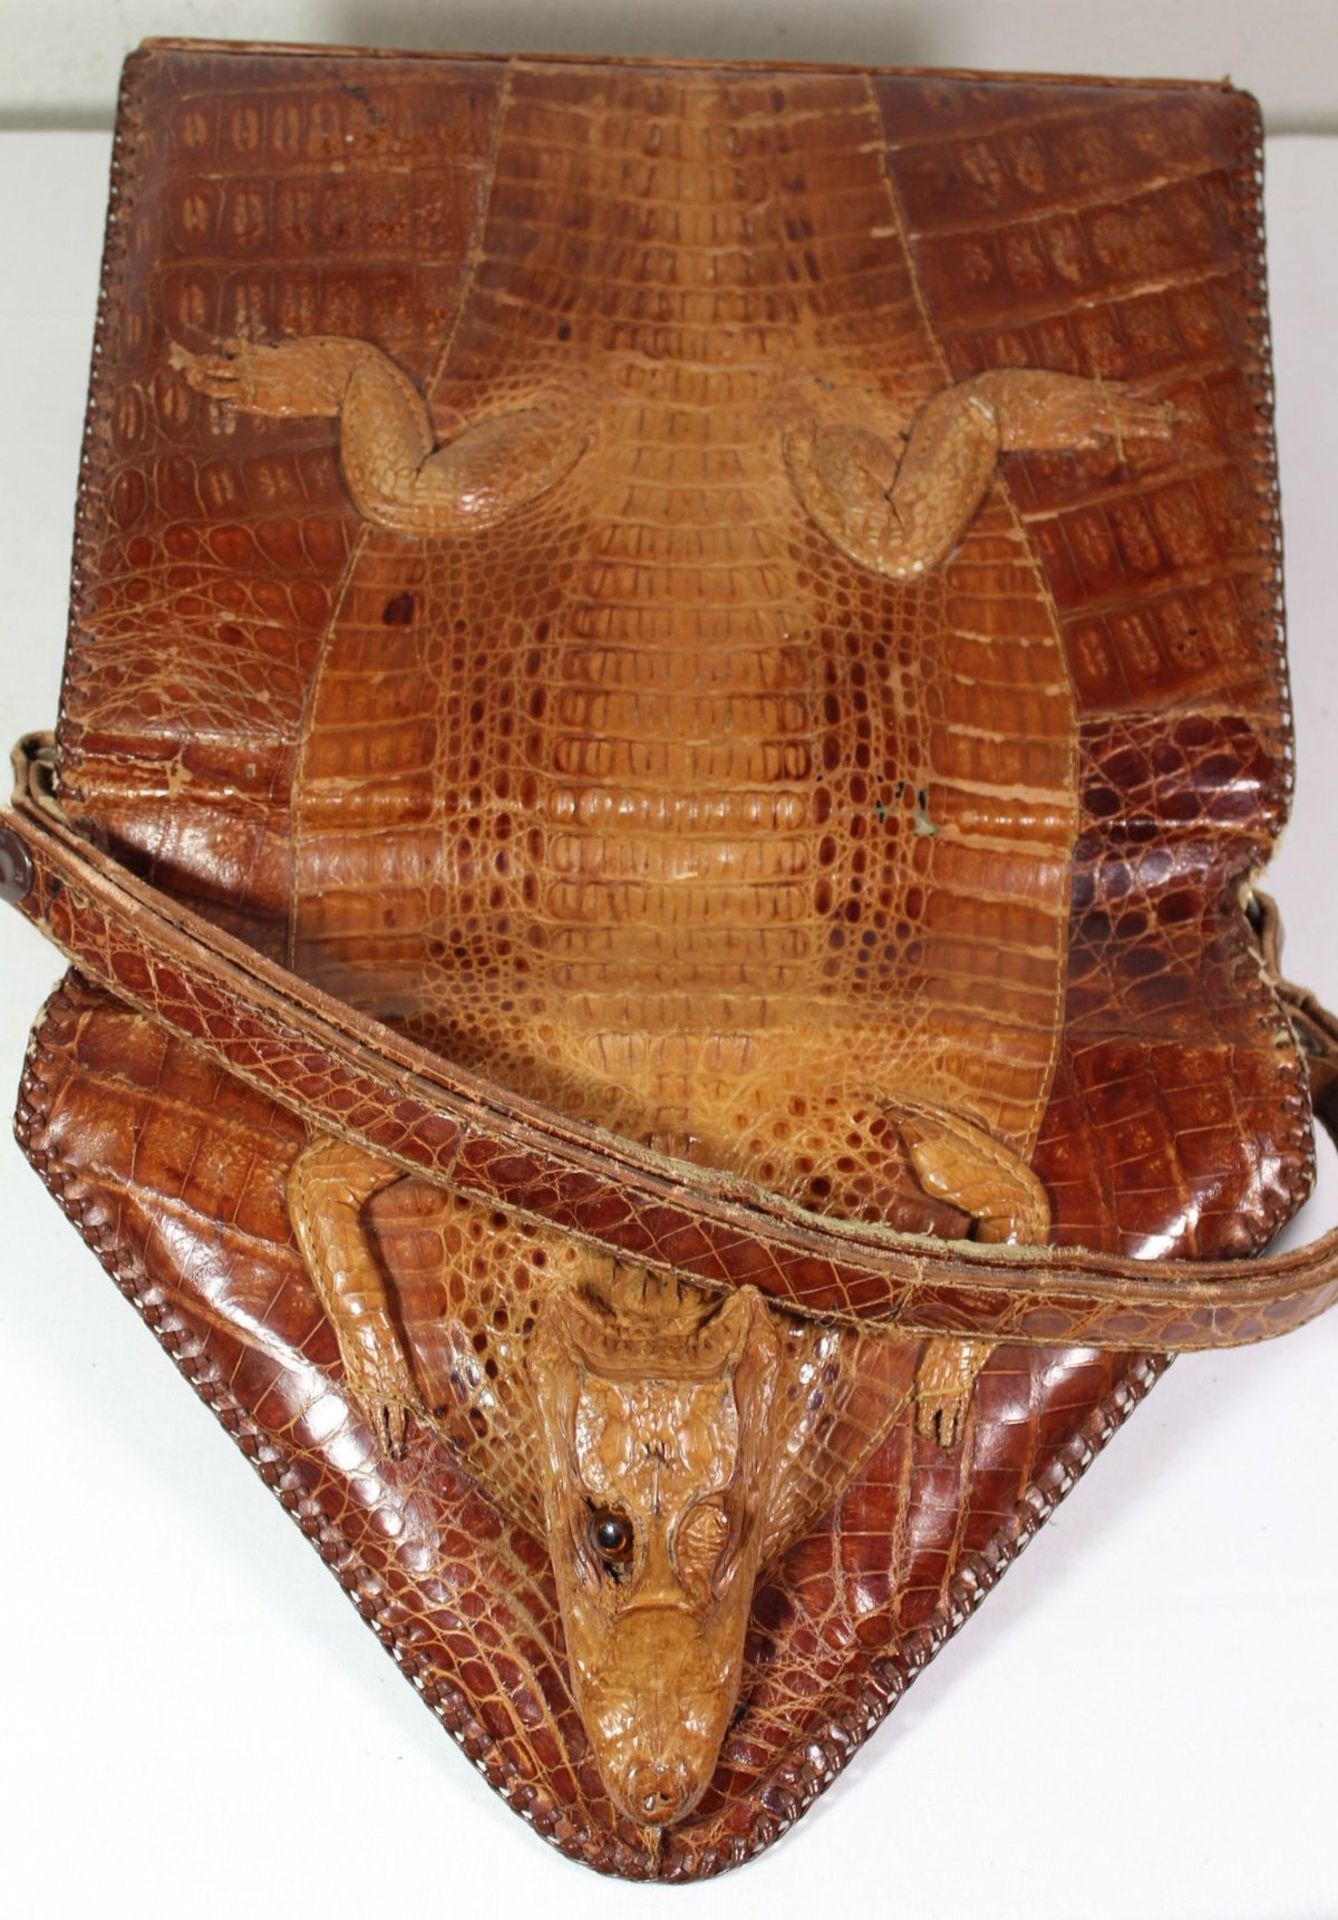 Damenhandtasche, Krokoleder, USA, Tragespuren, wohl 50/60er Jahre, 1x Auge fehlt, 19 x 26cm. - Bild 3 aus 5